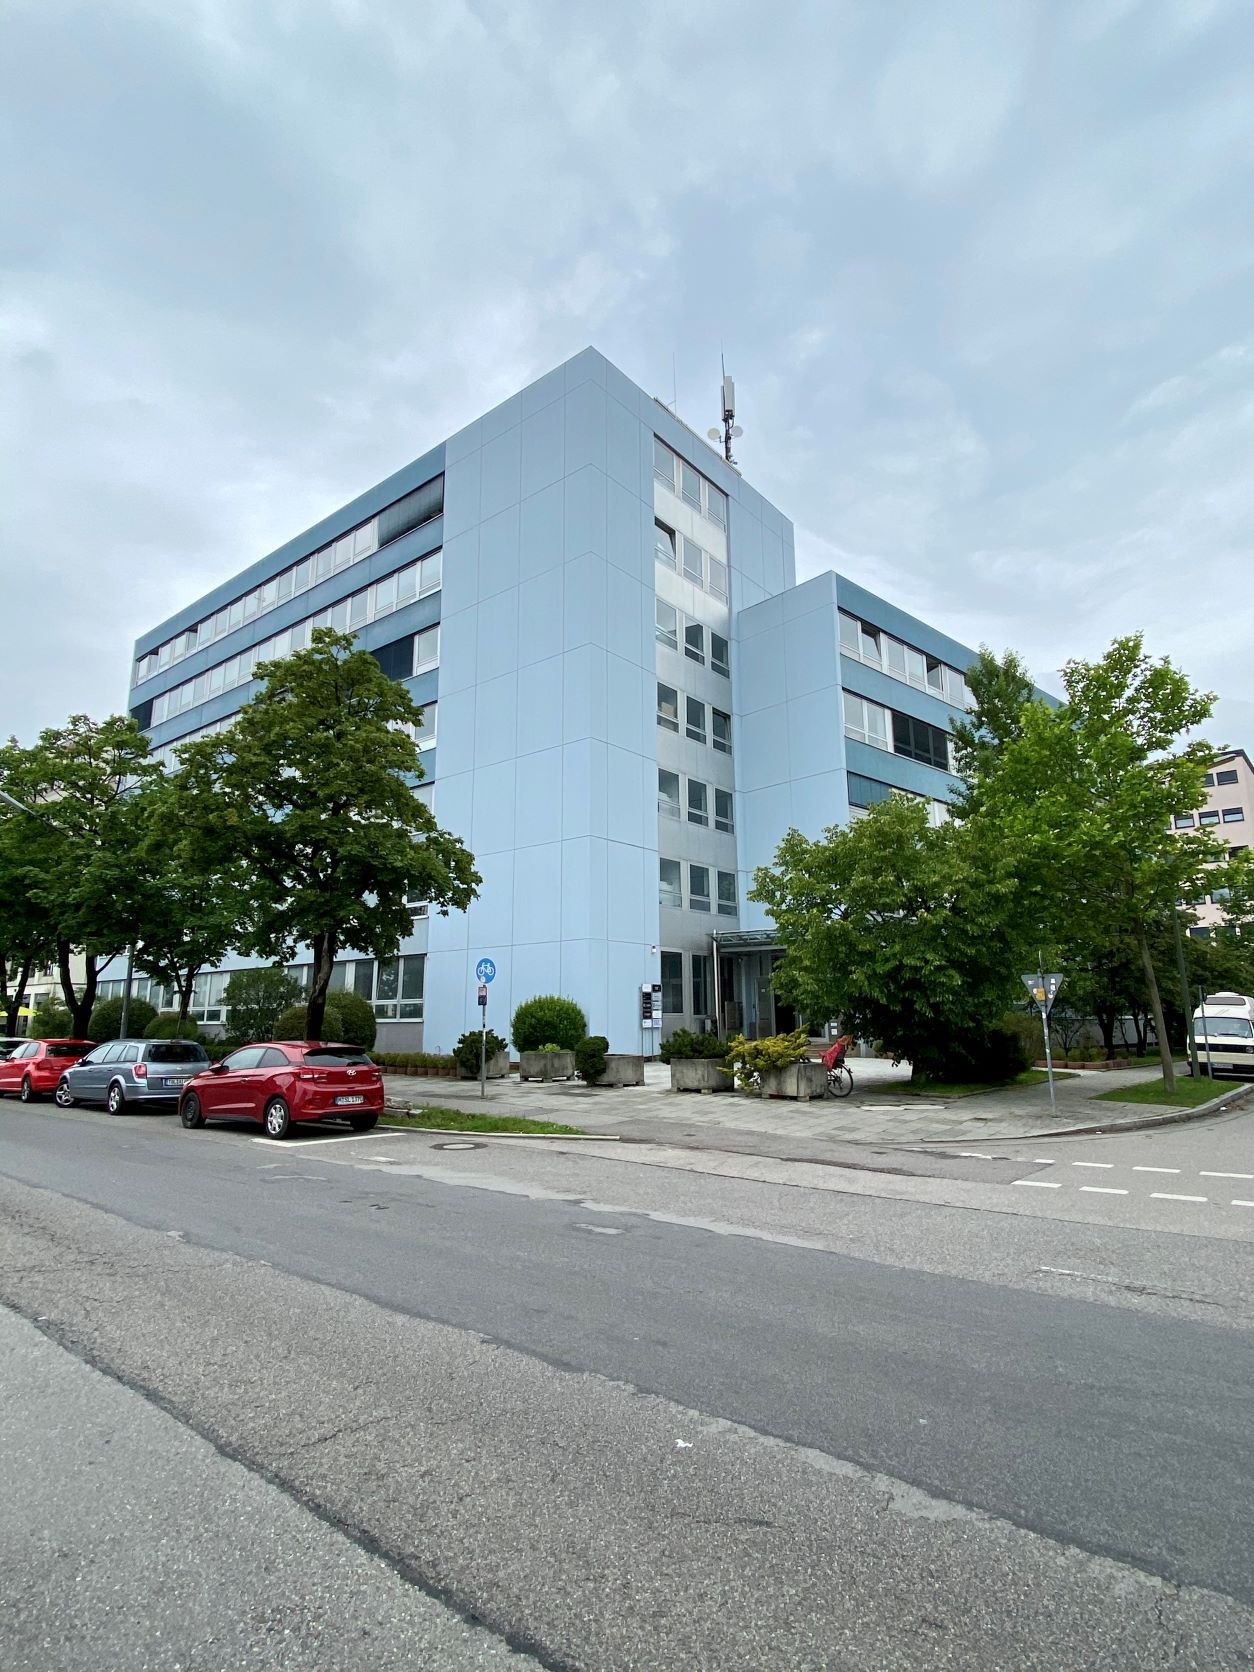 Stock Real Estate GmbH - Immobilienangebot - 81379 München - Thalk.Obersendl.-Forsten-Fürstenr.-Solln - Büro / Praxis / Ausstellungsräume - Individuelle Bürofläche im Münchner Süden